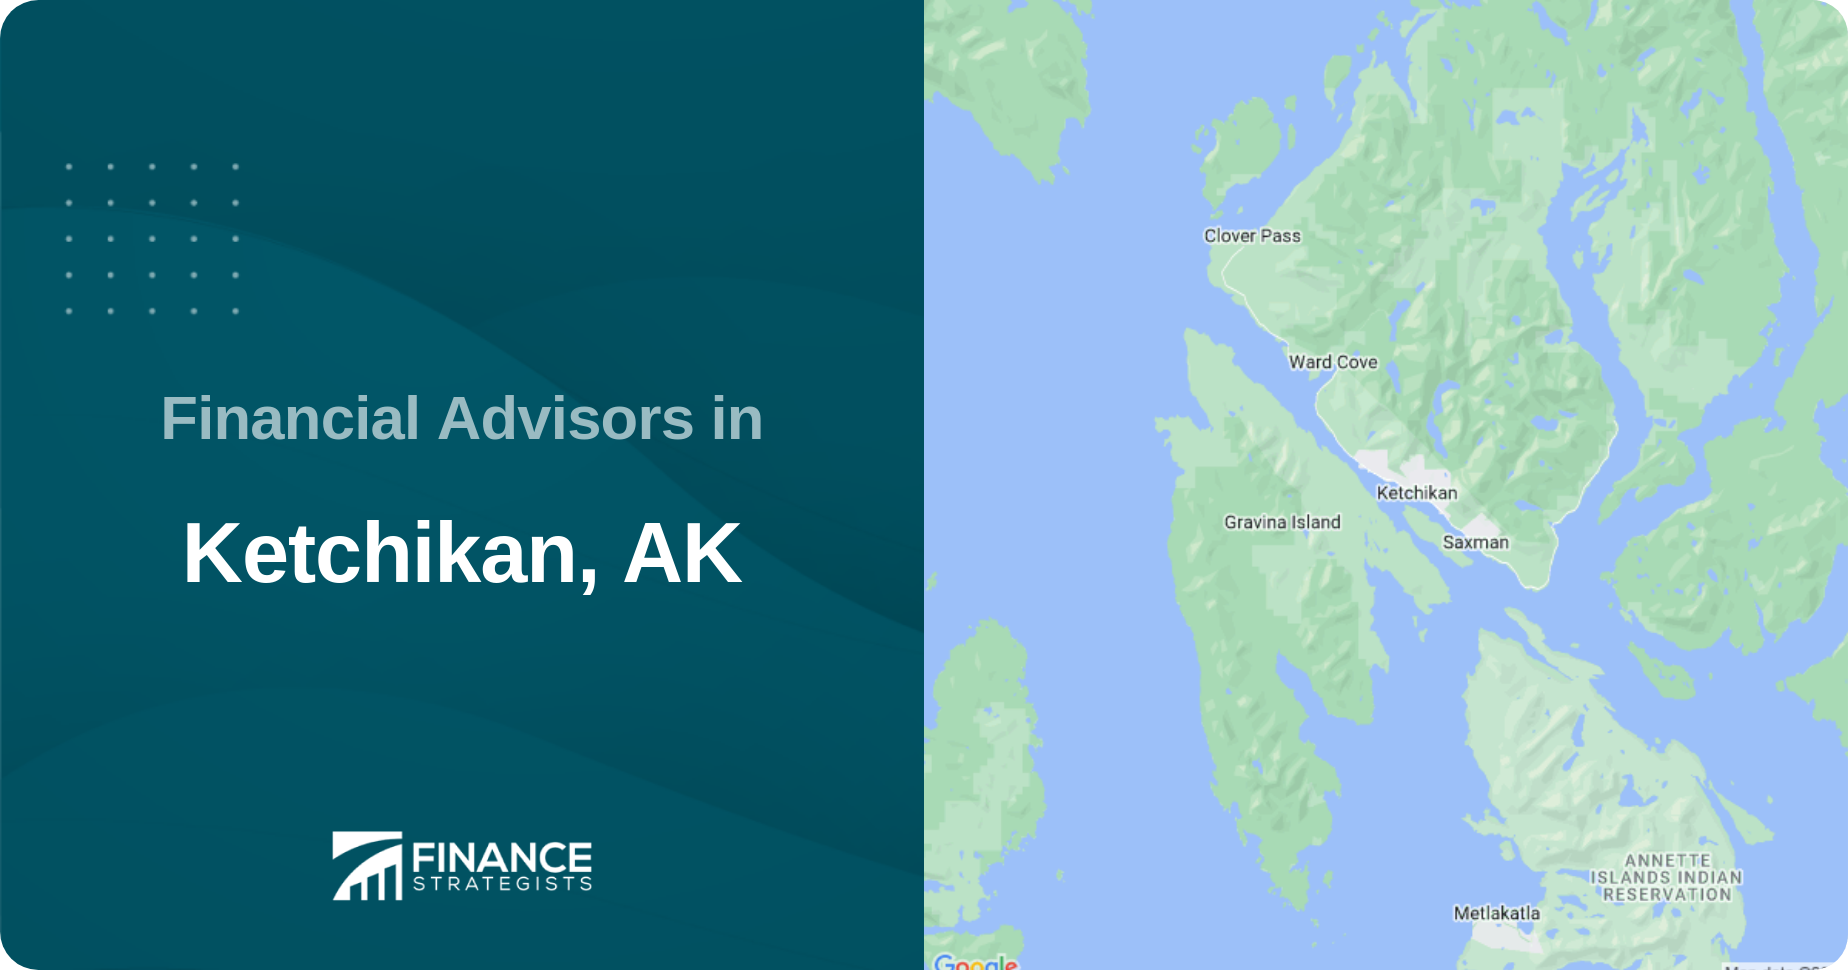 Financial Advisors in Ketchikan, AK